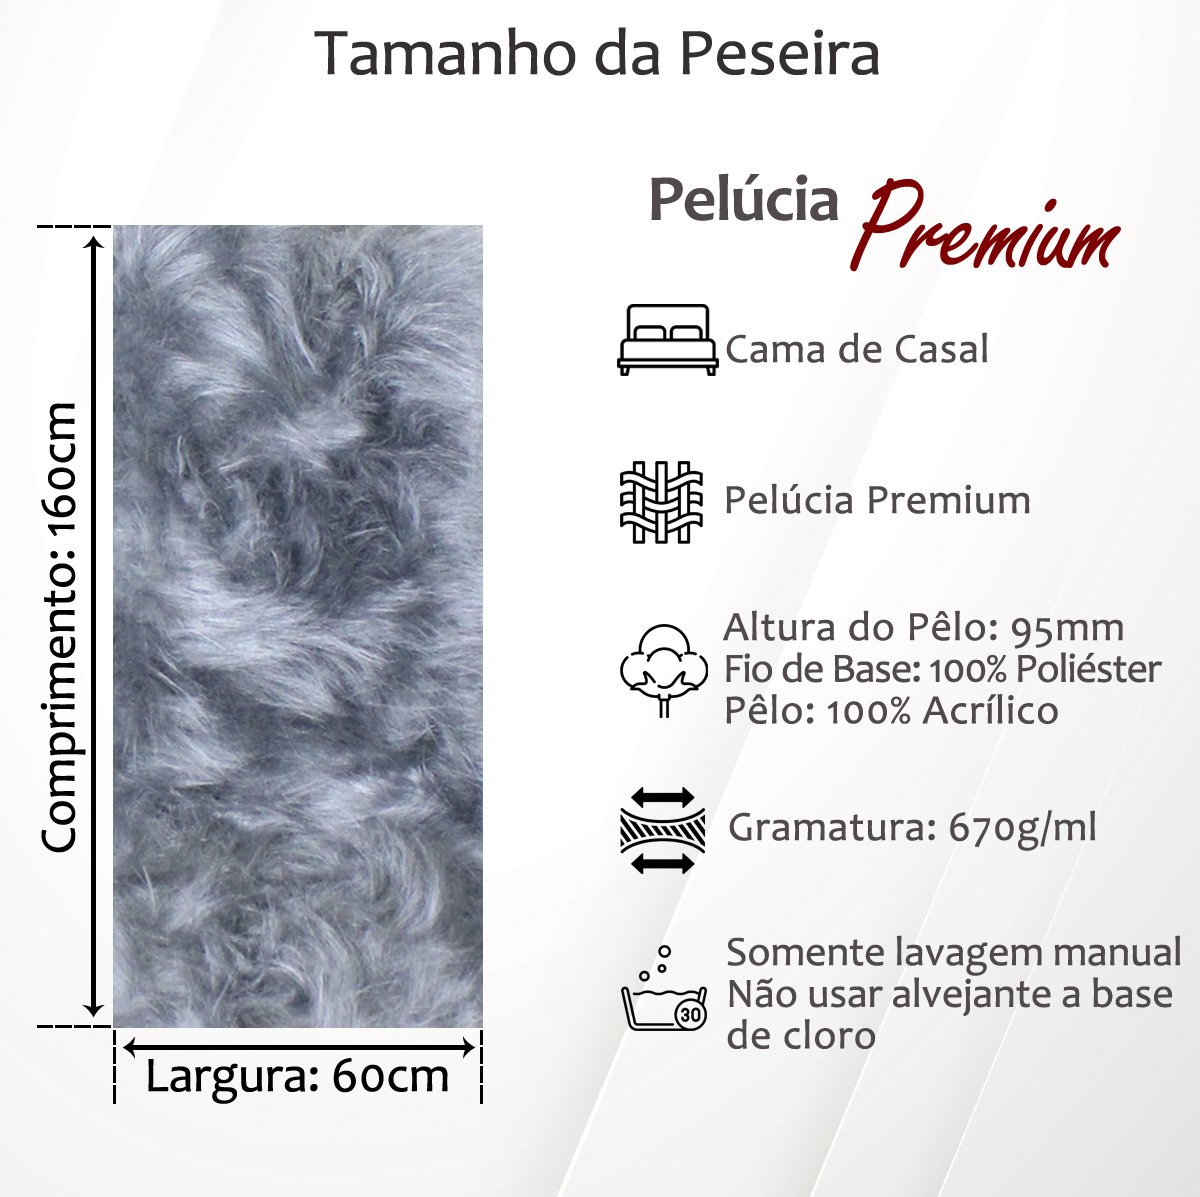 Peseira Premium Pelúcia Pelo Alto Para Cama Casal Comum 1,60mx60cm: Branco - 4